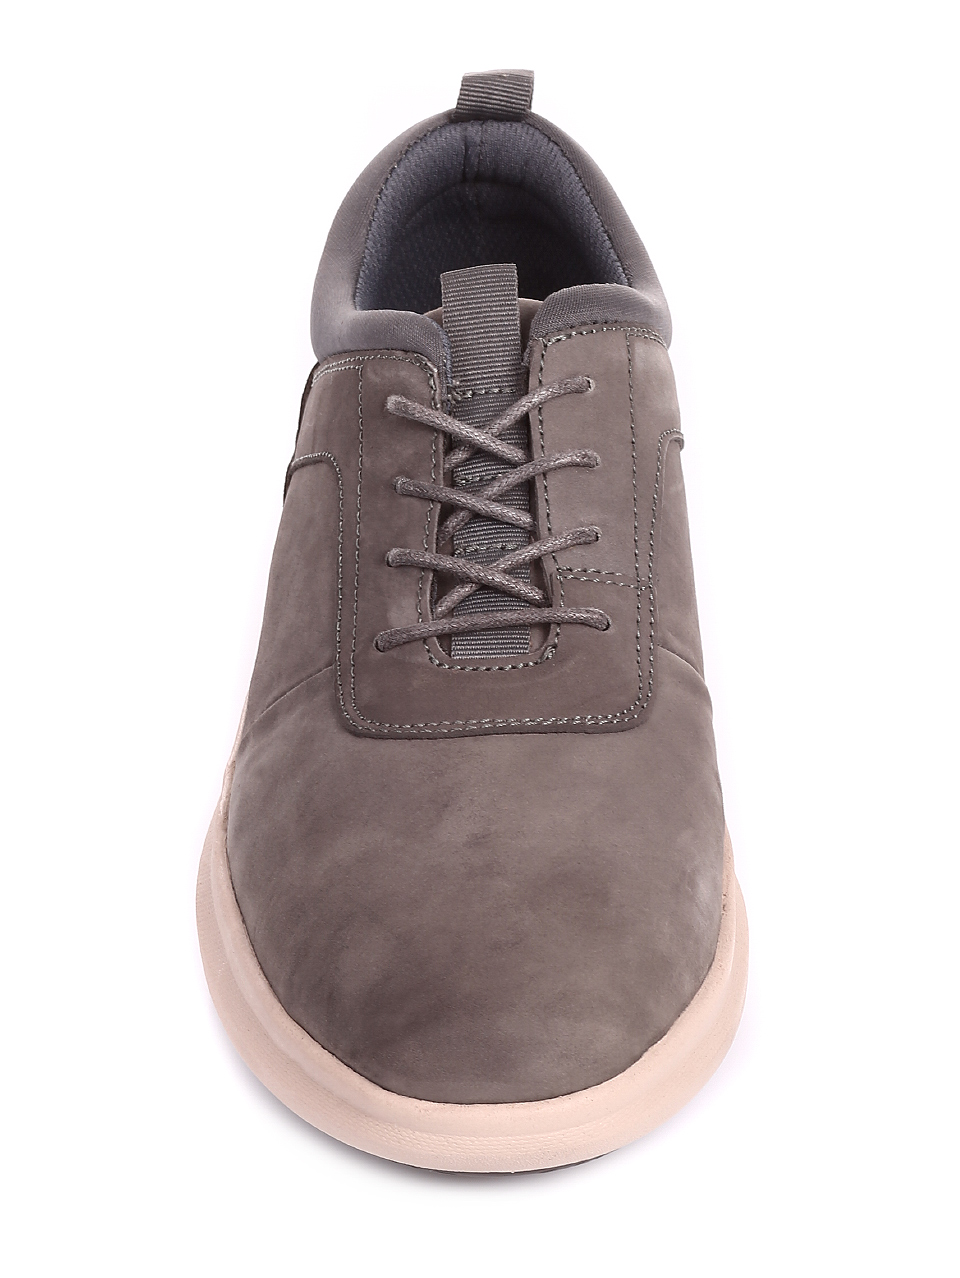 Ежедневни мъжки обувки от естествен набук 7X-20249 grey